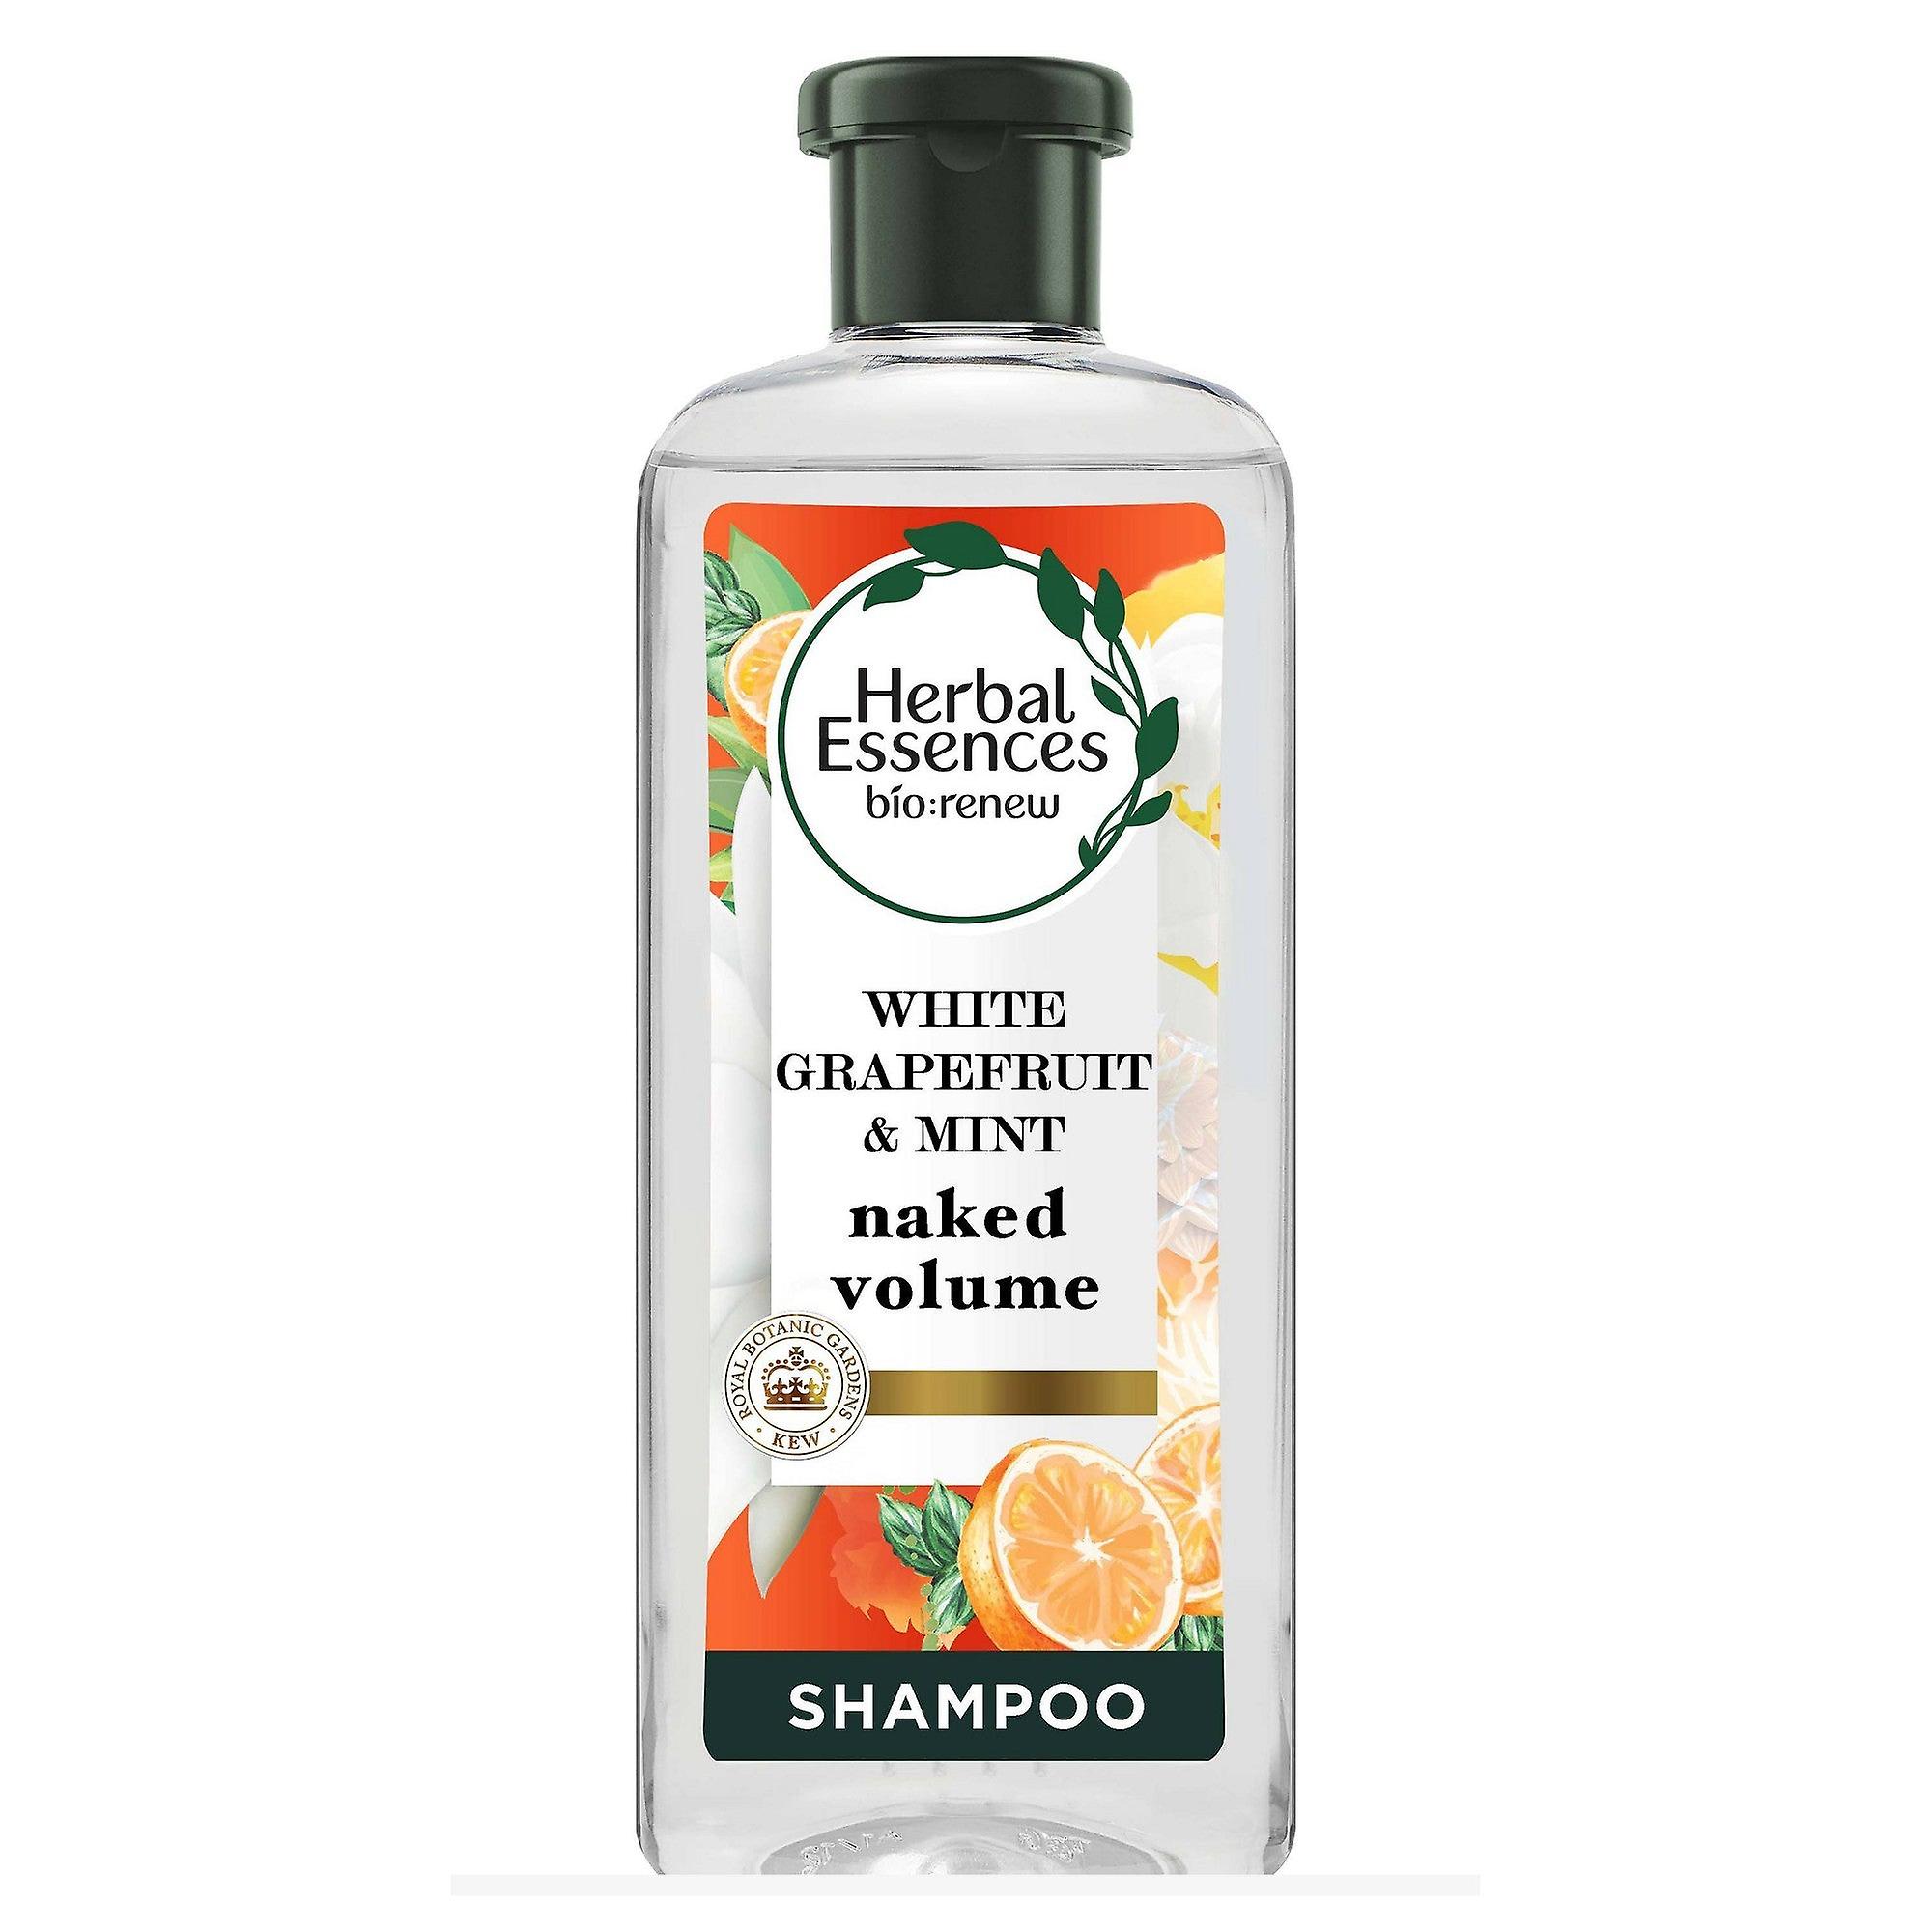 szampon o herbal volume